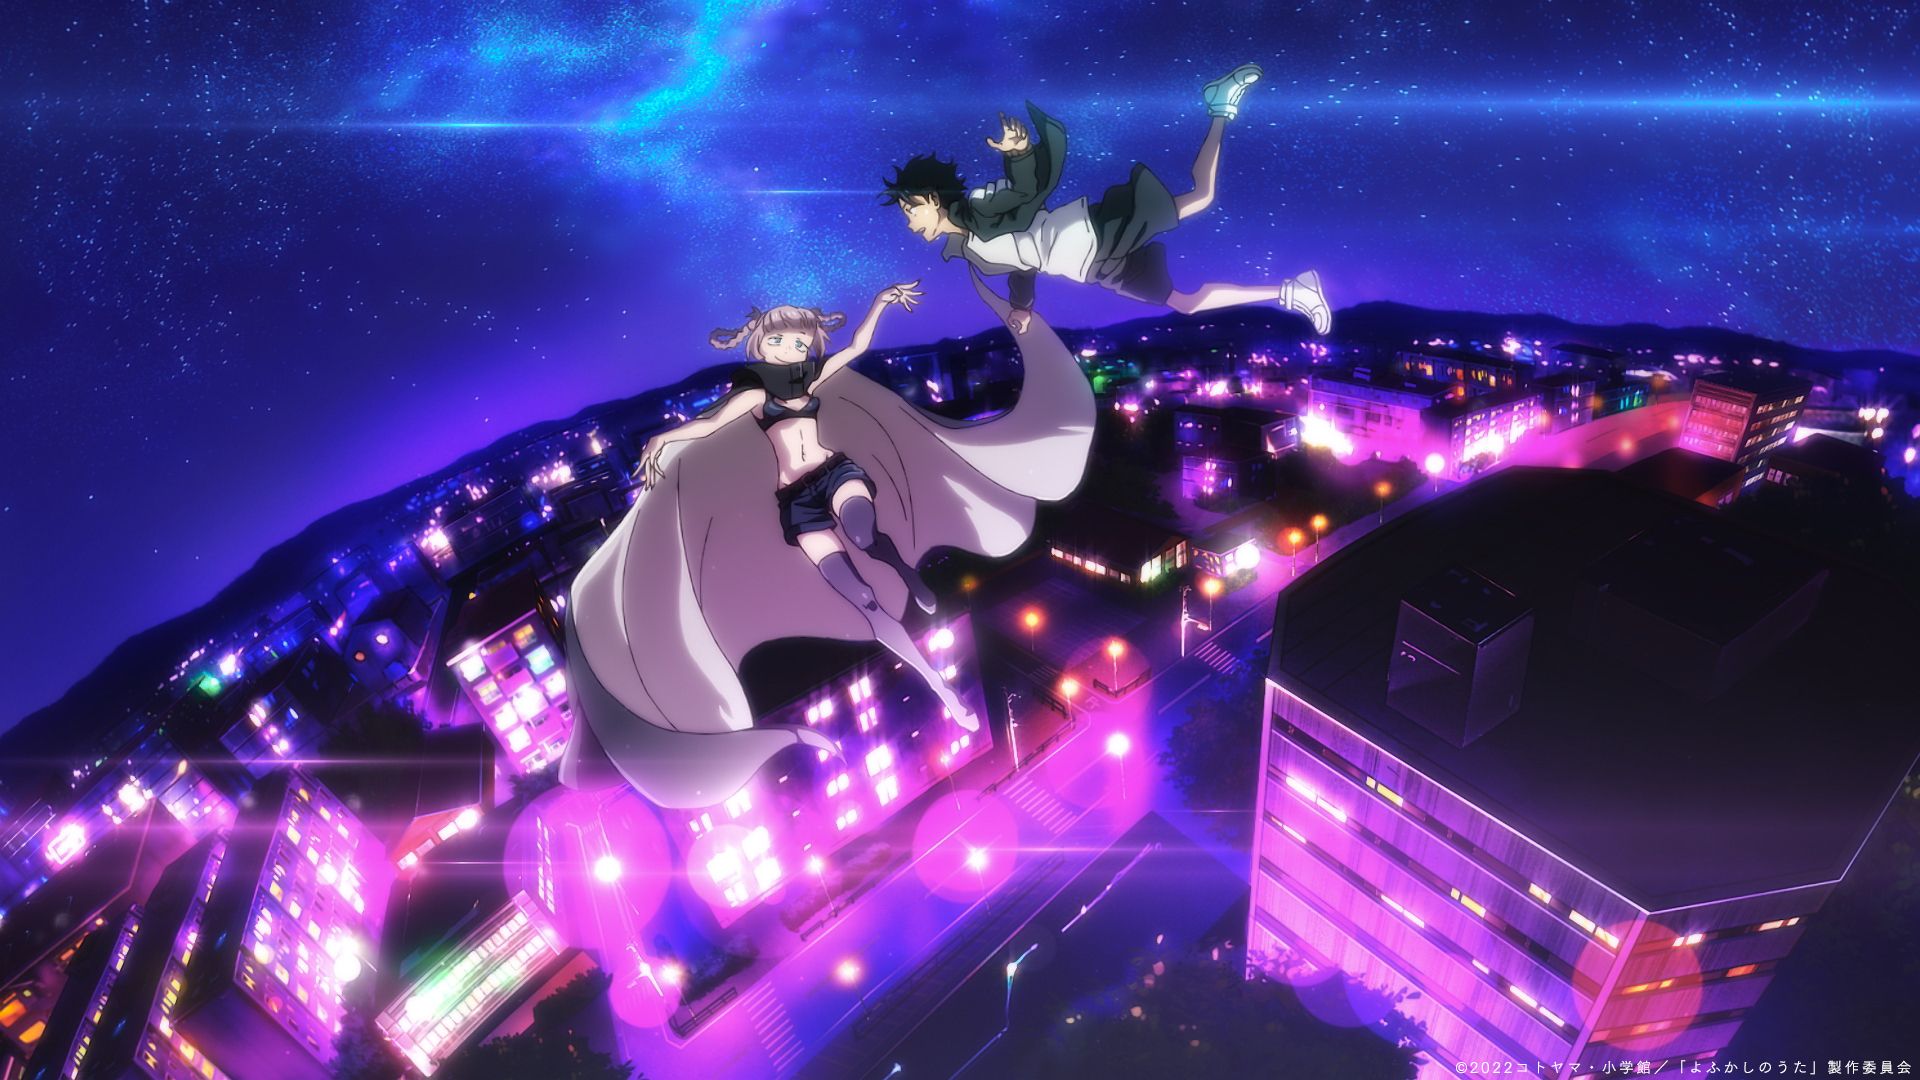 Yofukashi no Uta ganha novo trailer e data de estreia - Anime United